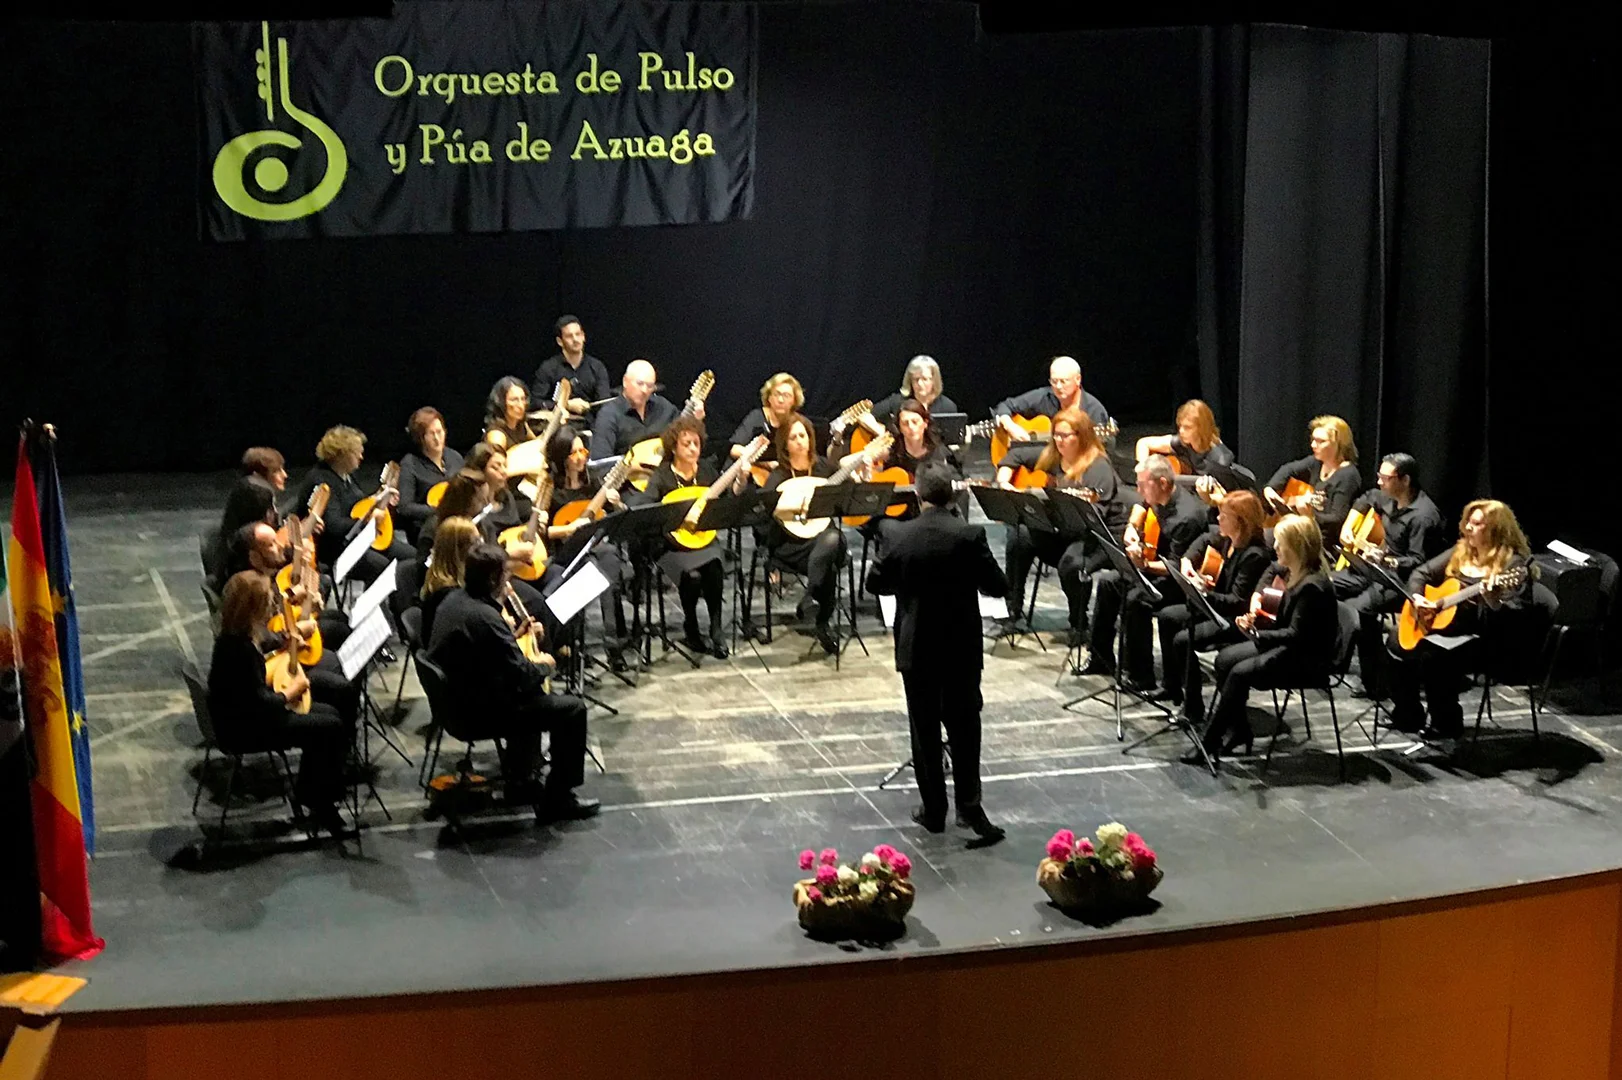 Orquesta de Pulso y Púa de Azuaga